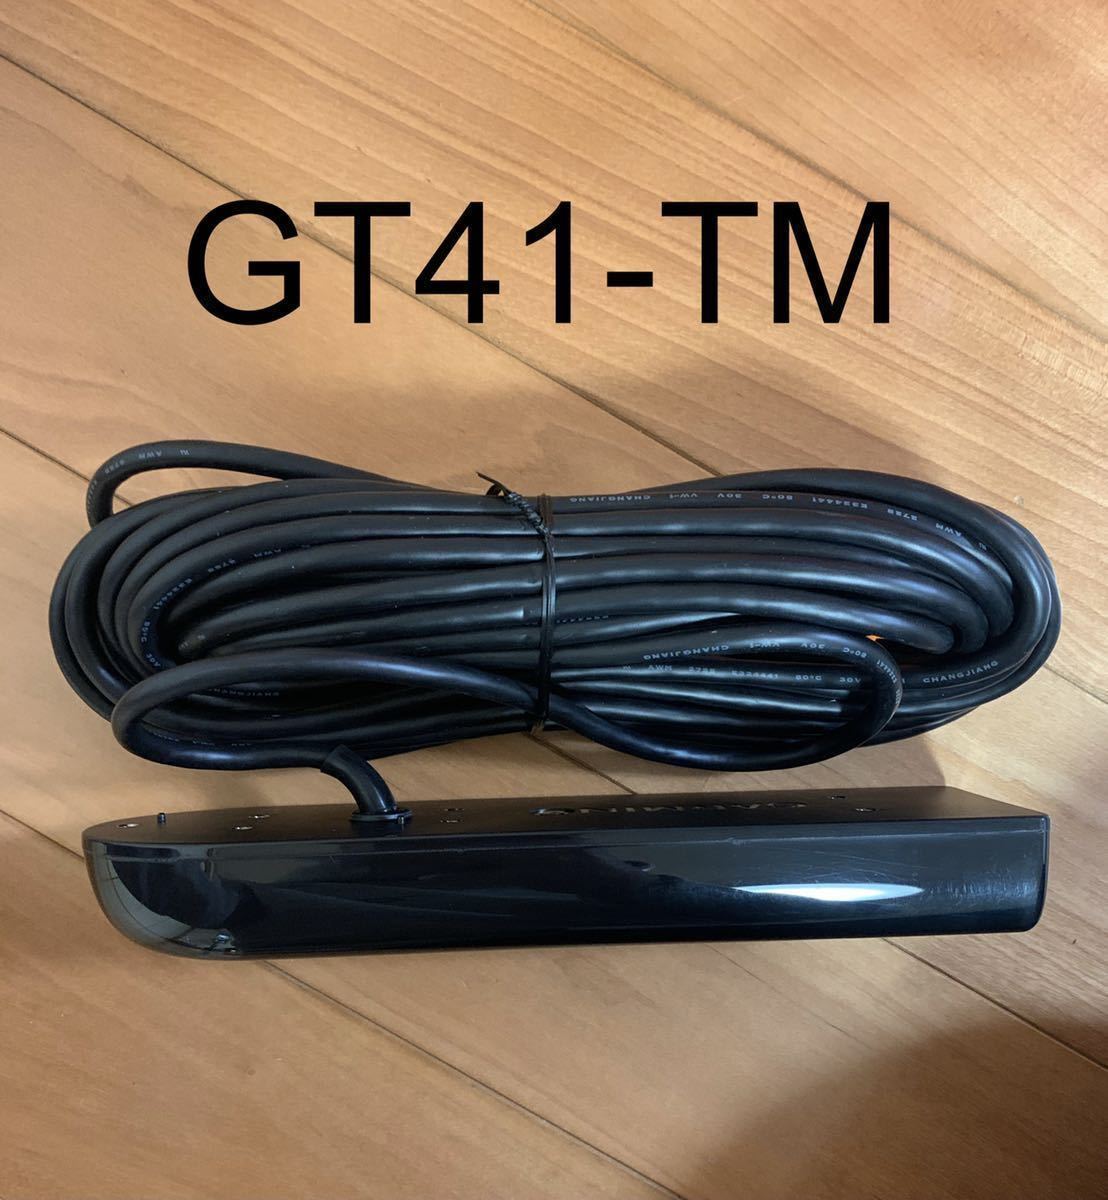 ガーミン GT41-TM振動子 | www.mj-company.co.jp